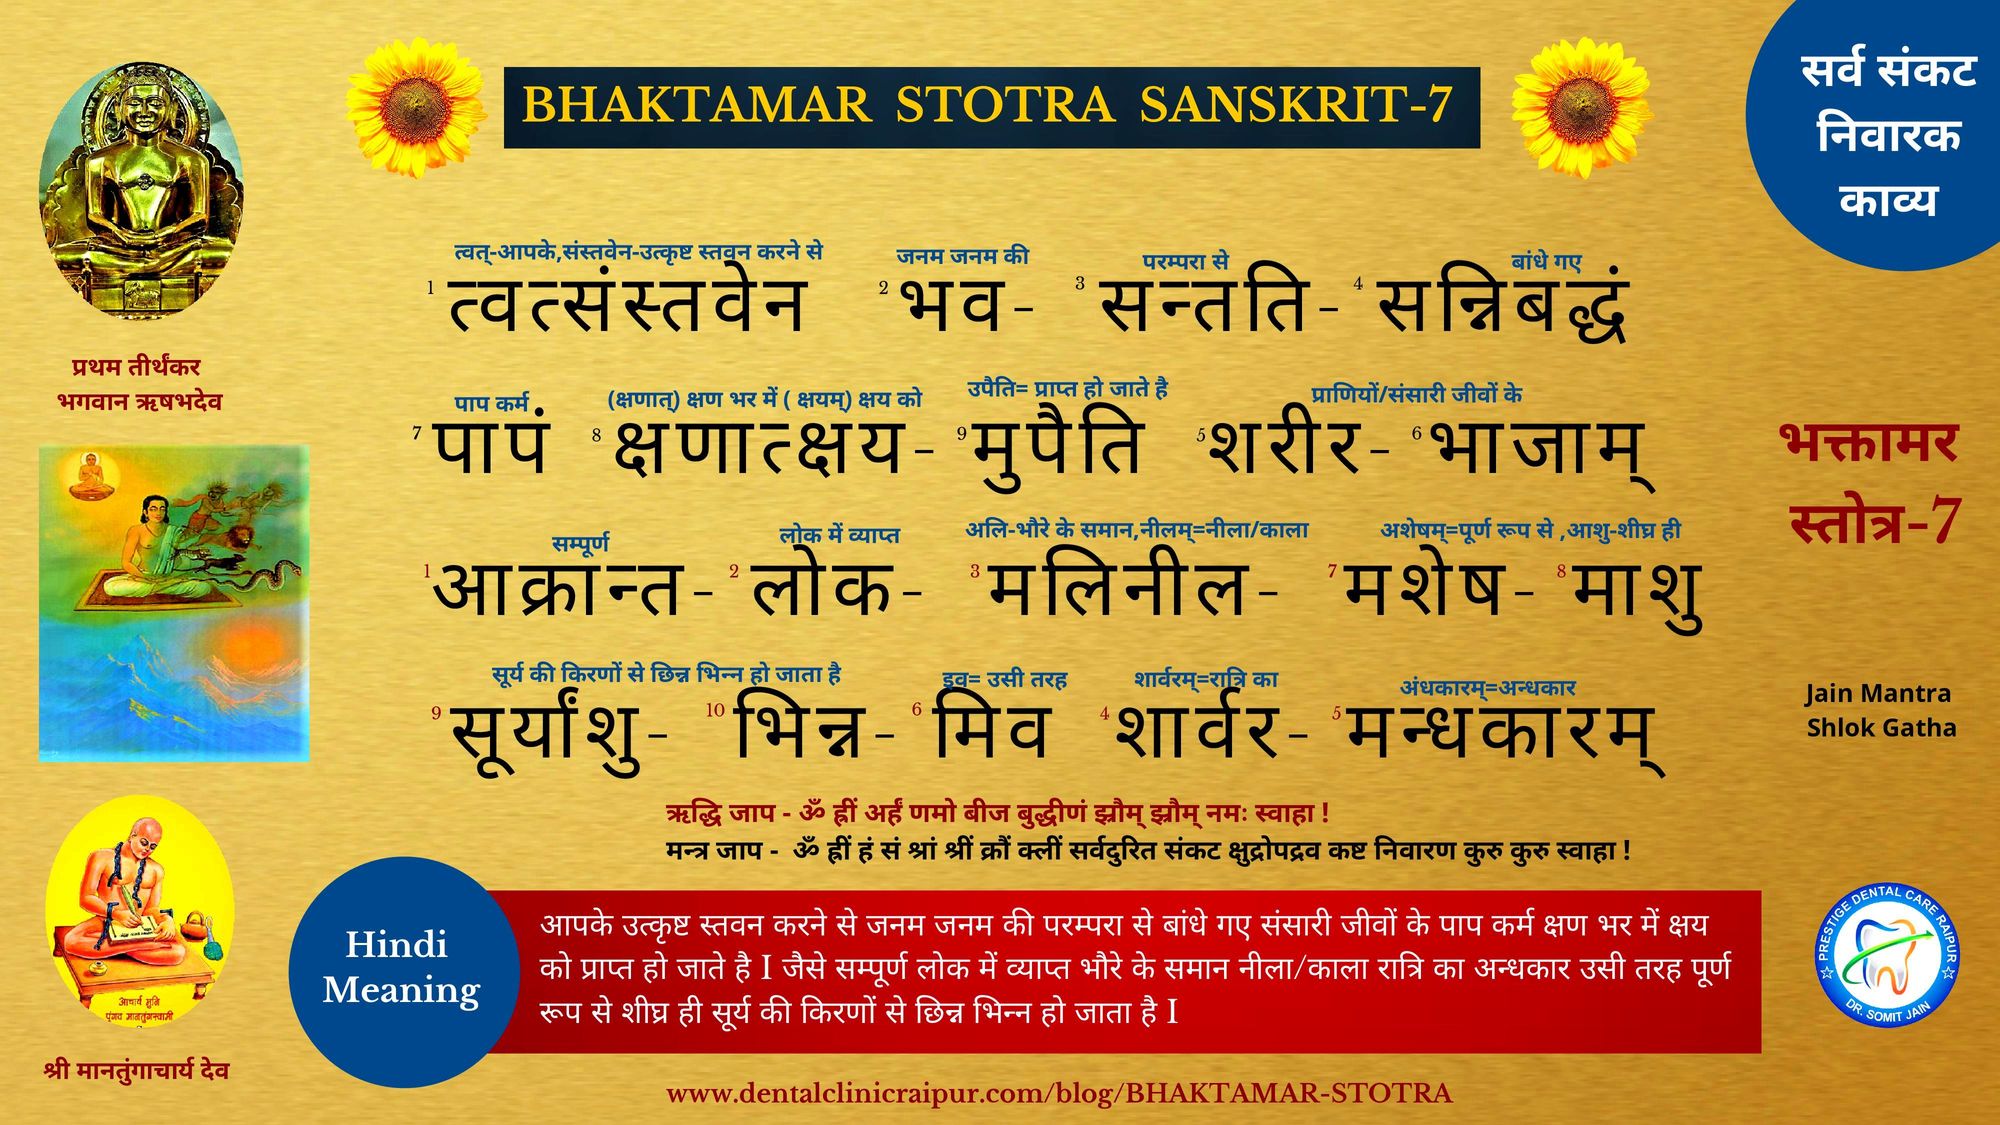 BHAKTAMAR STOTRA 7 HINDI MEANING